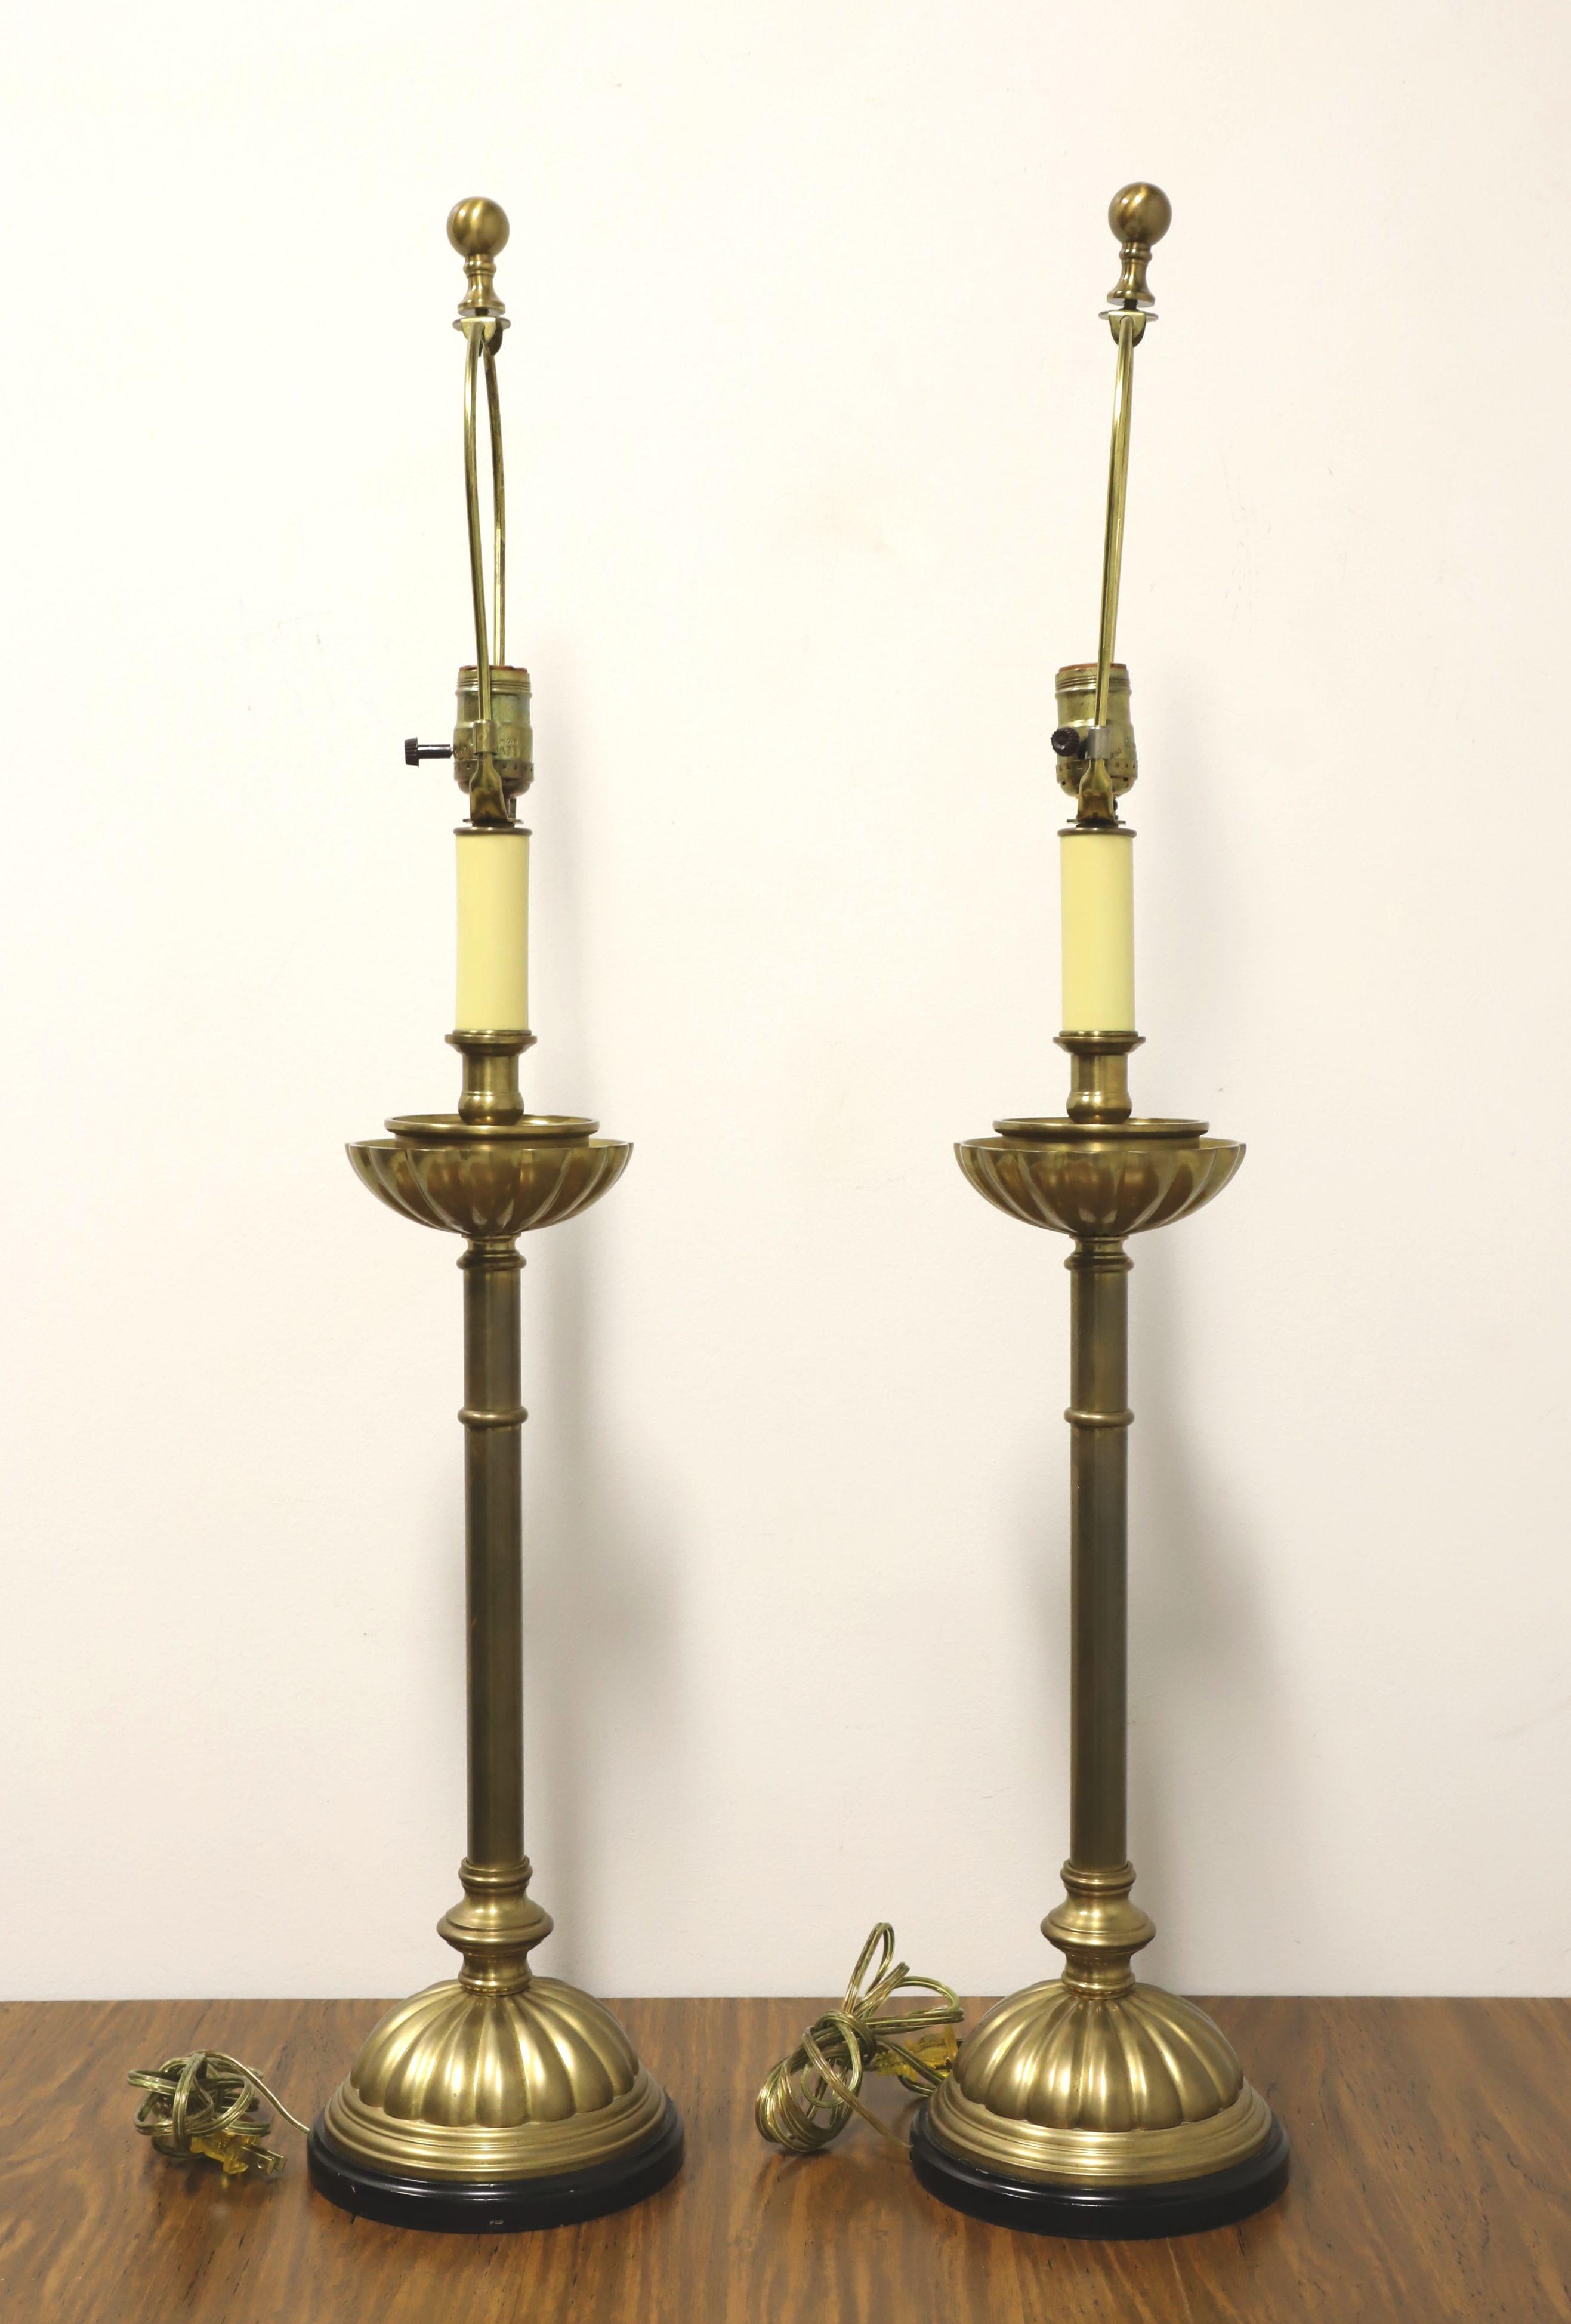 Paire de lampes de table de style traditionnel, sans marque. Fabriquée en laiton massif, elle a la forme d'un chandelier, un plateau supérieur cannelé à la base de la partie bougie, une douille en plastique blanc pour donner l'apparence d'une